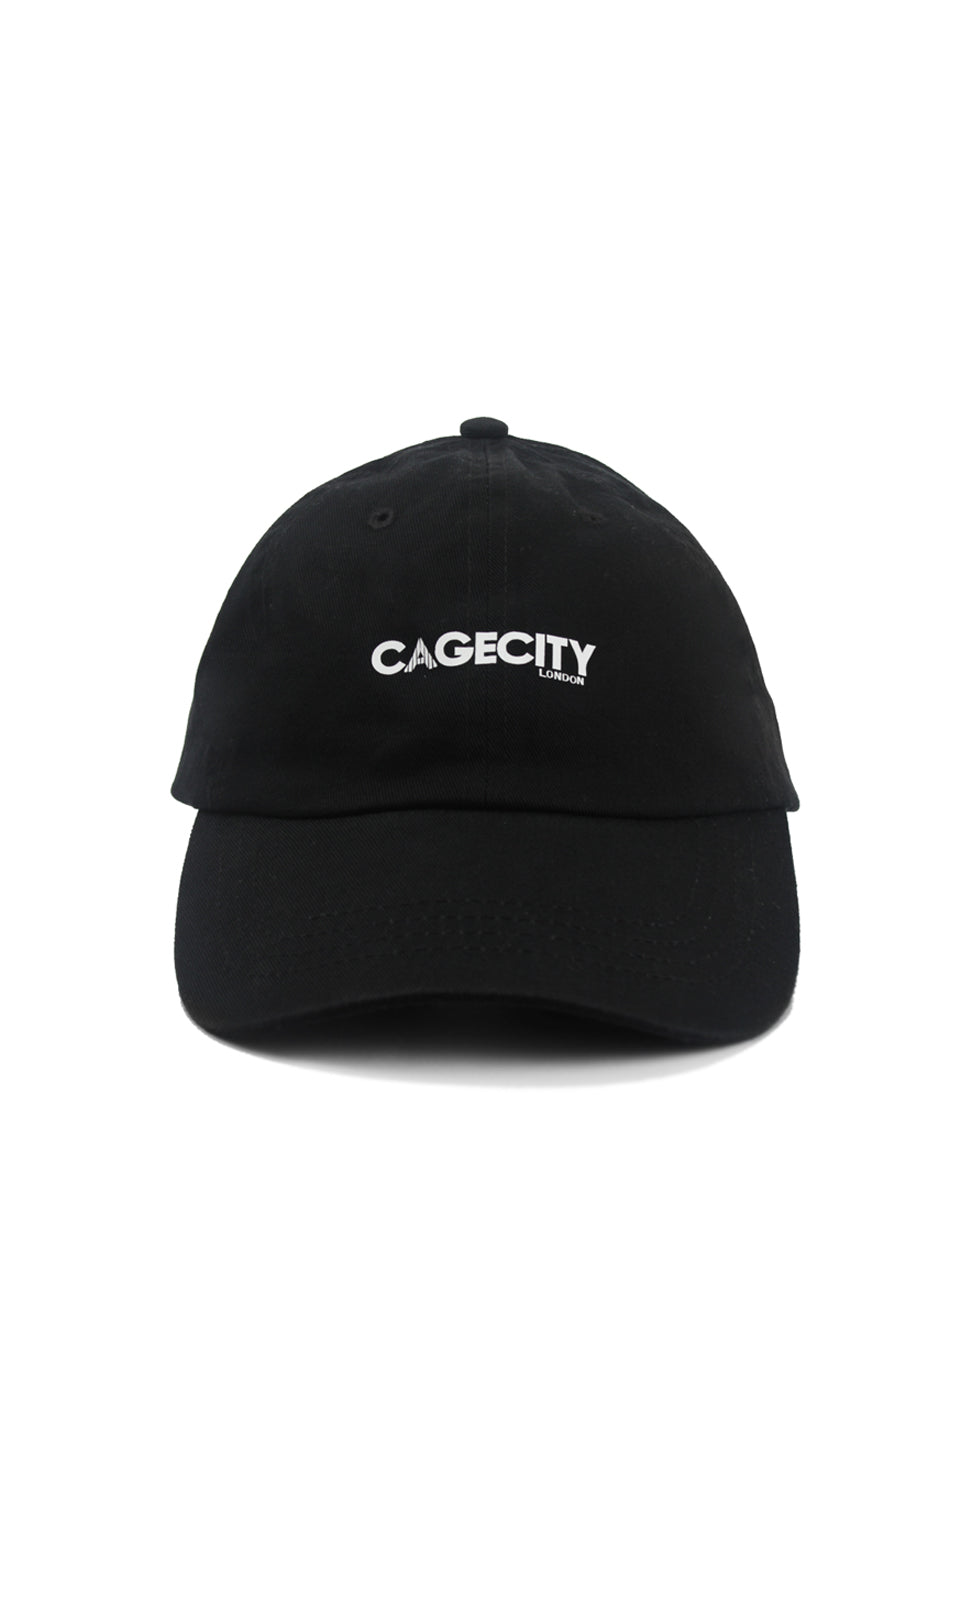 Cagecity London Classic Black Cap